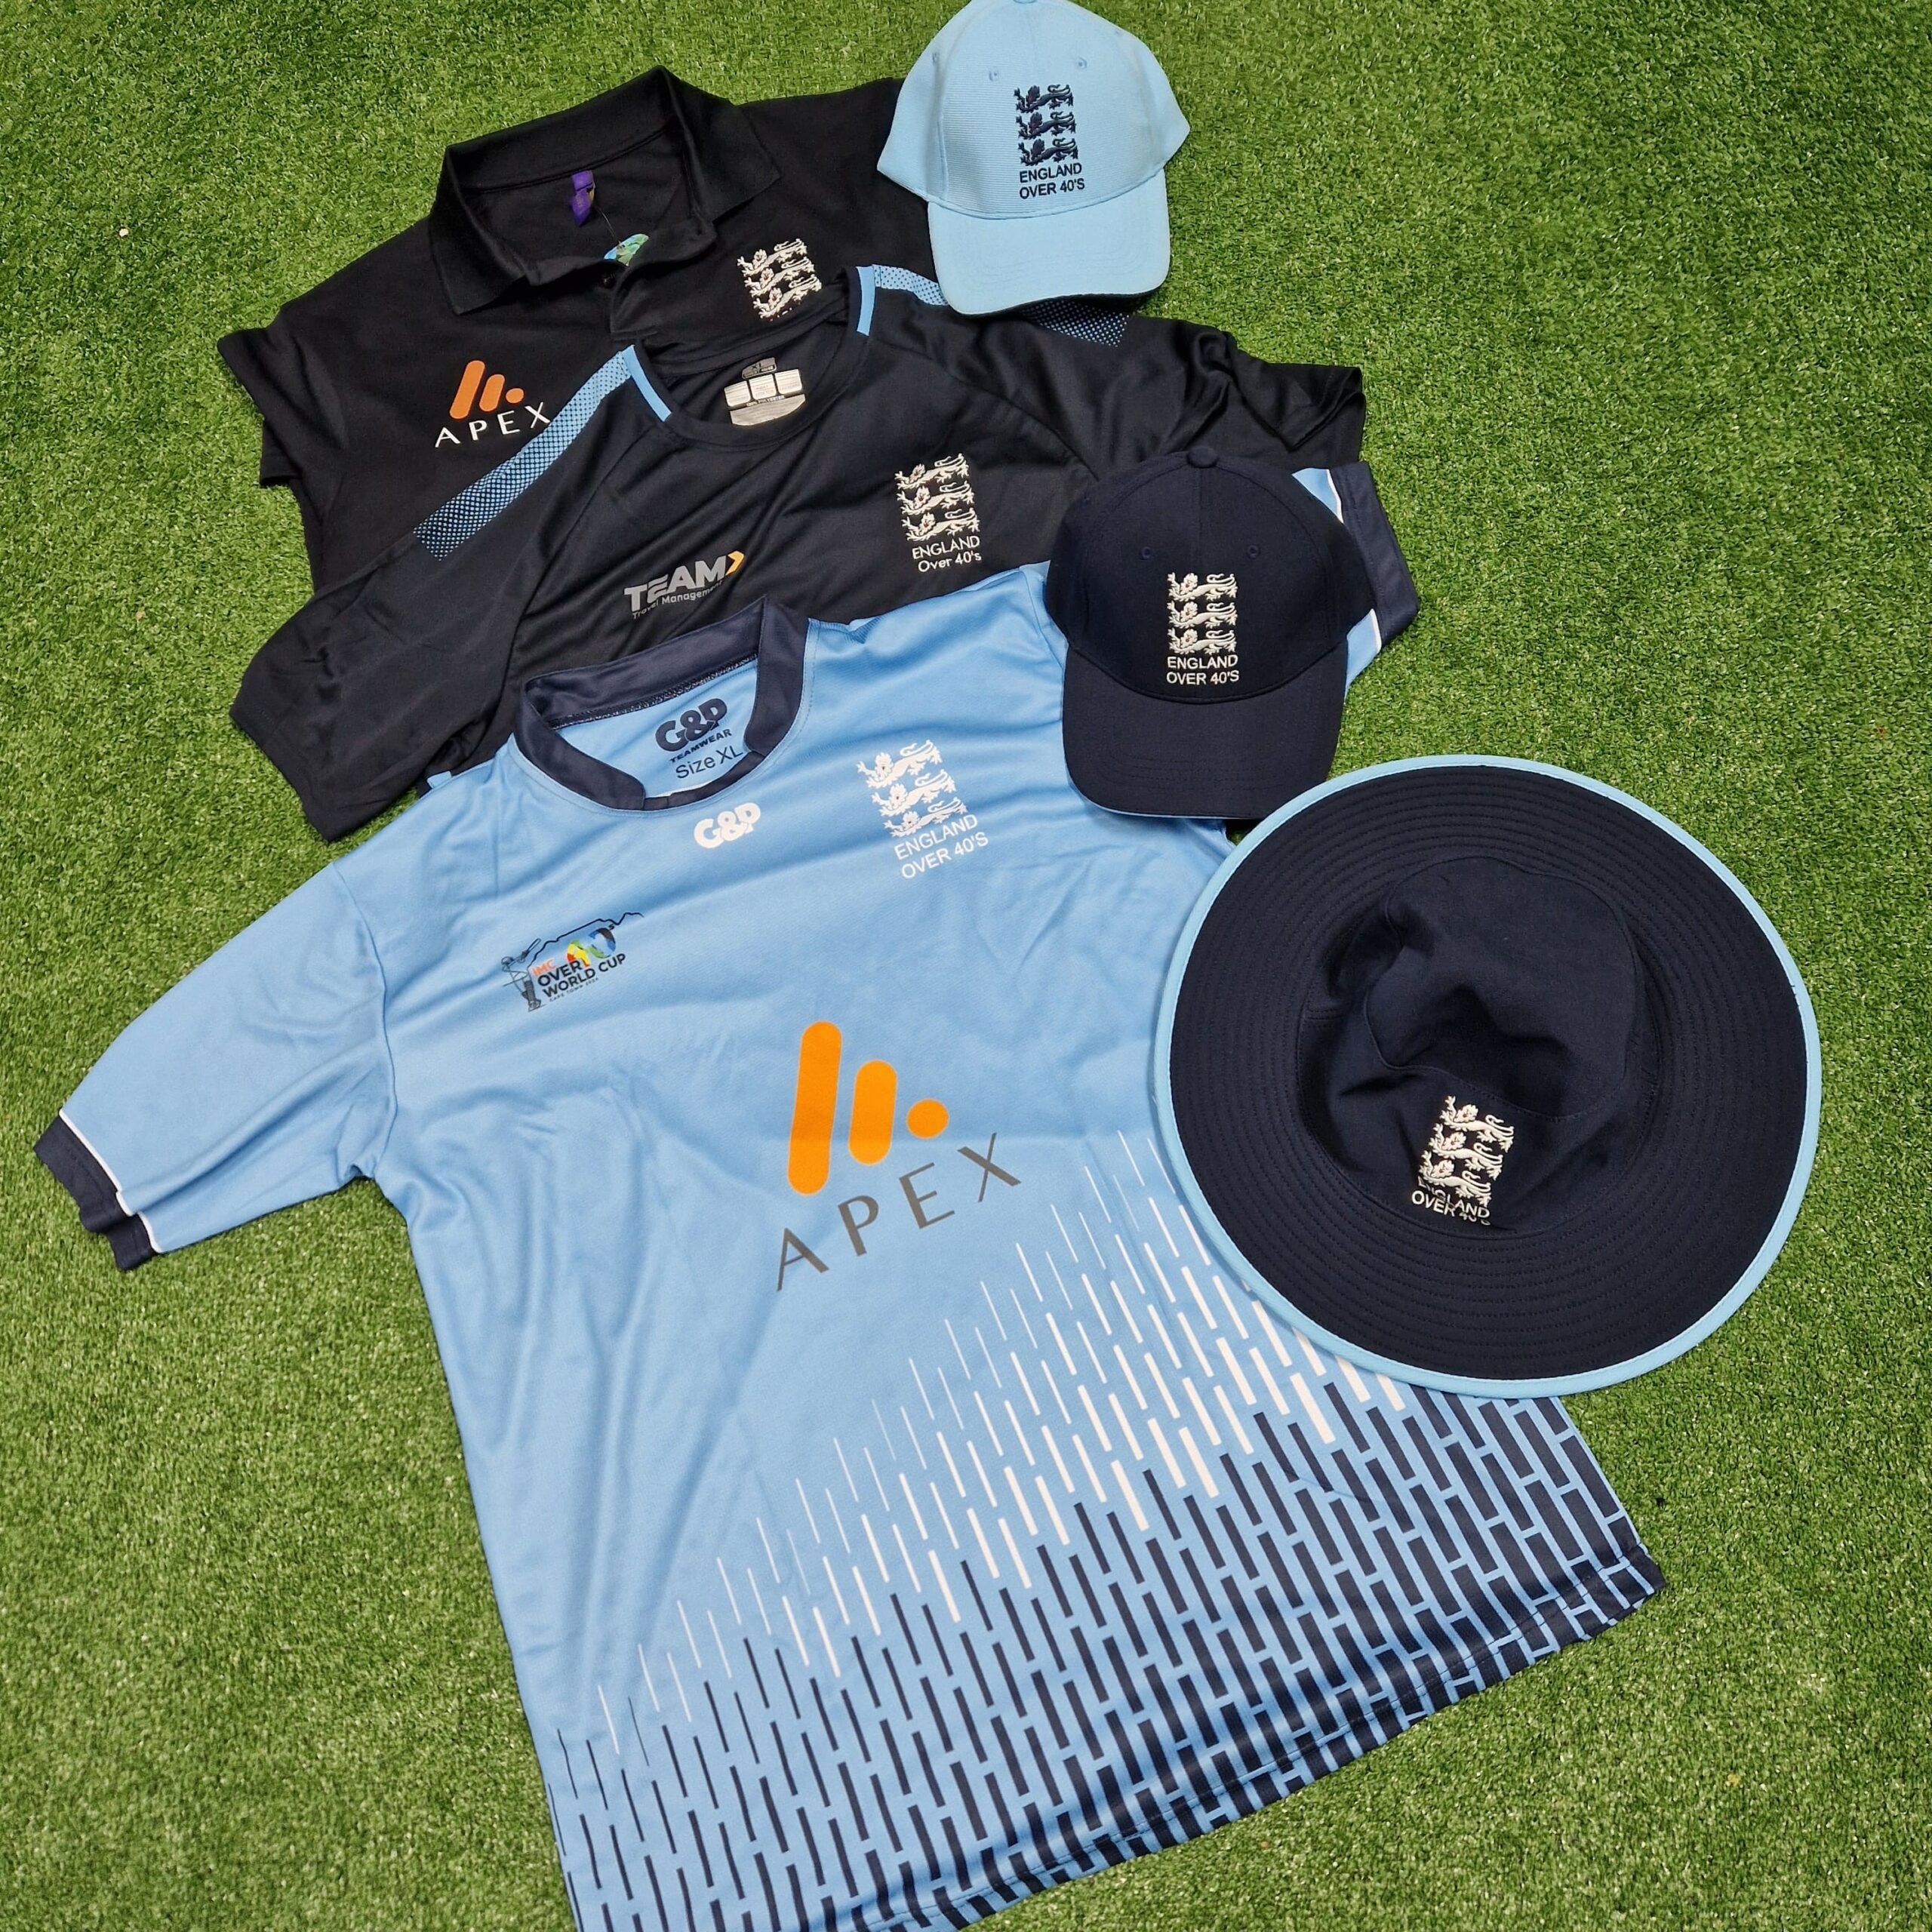 England cricket clothing